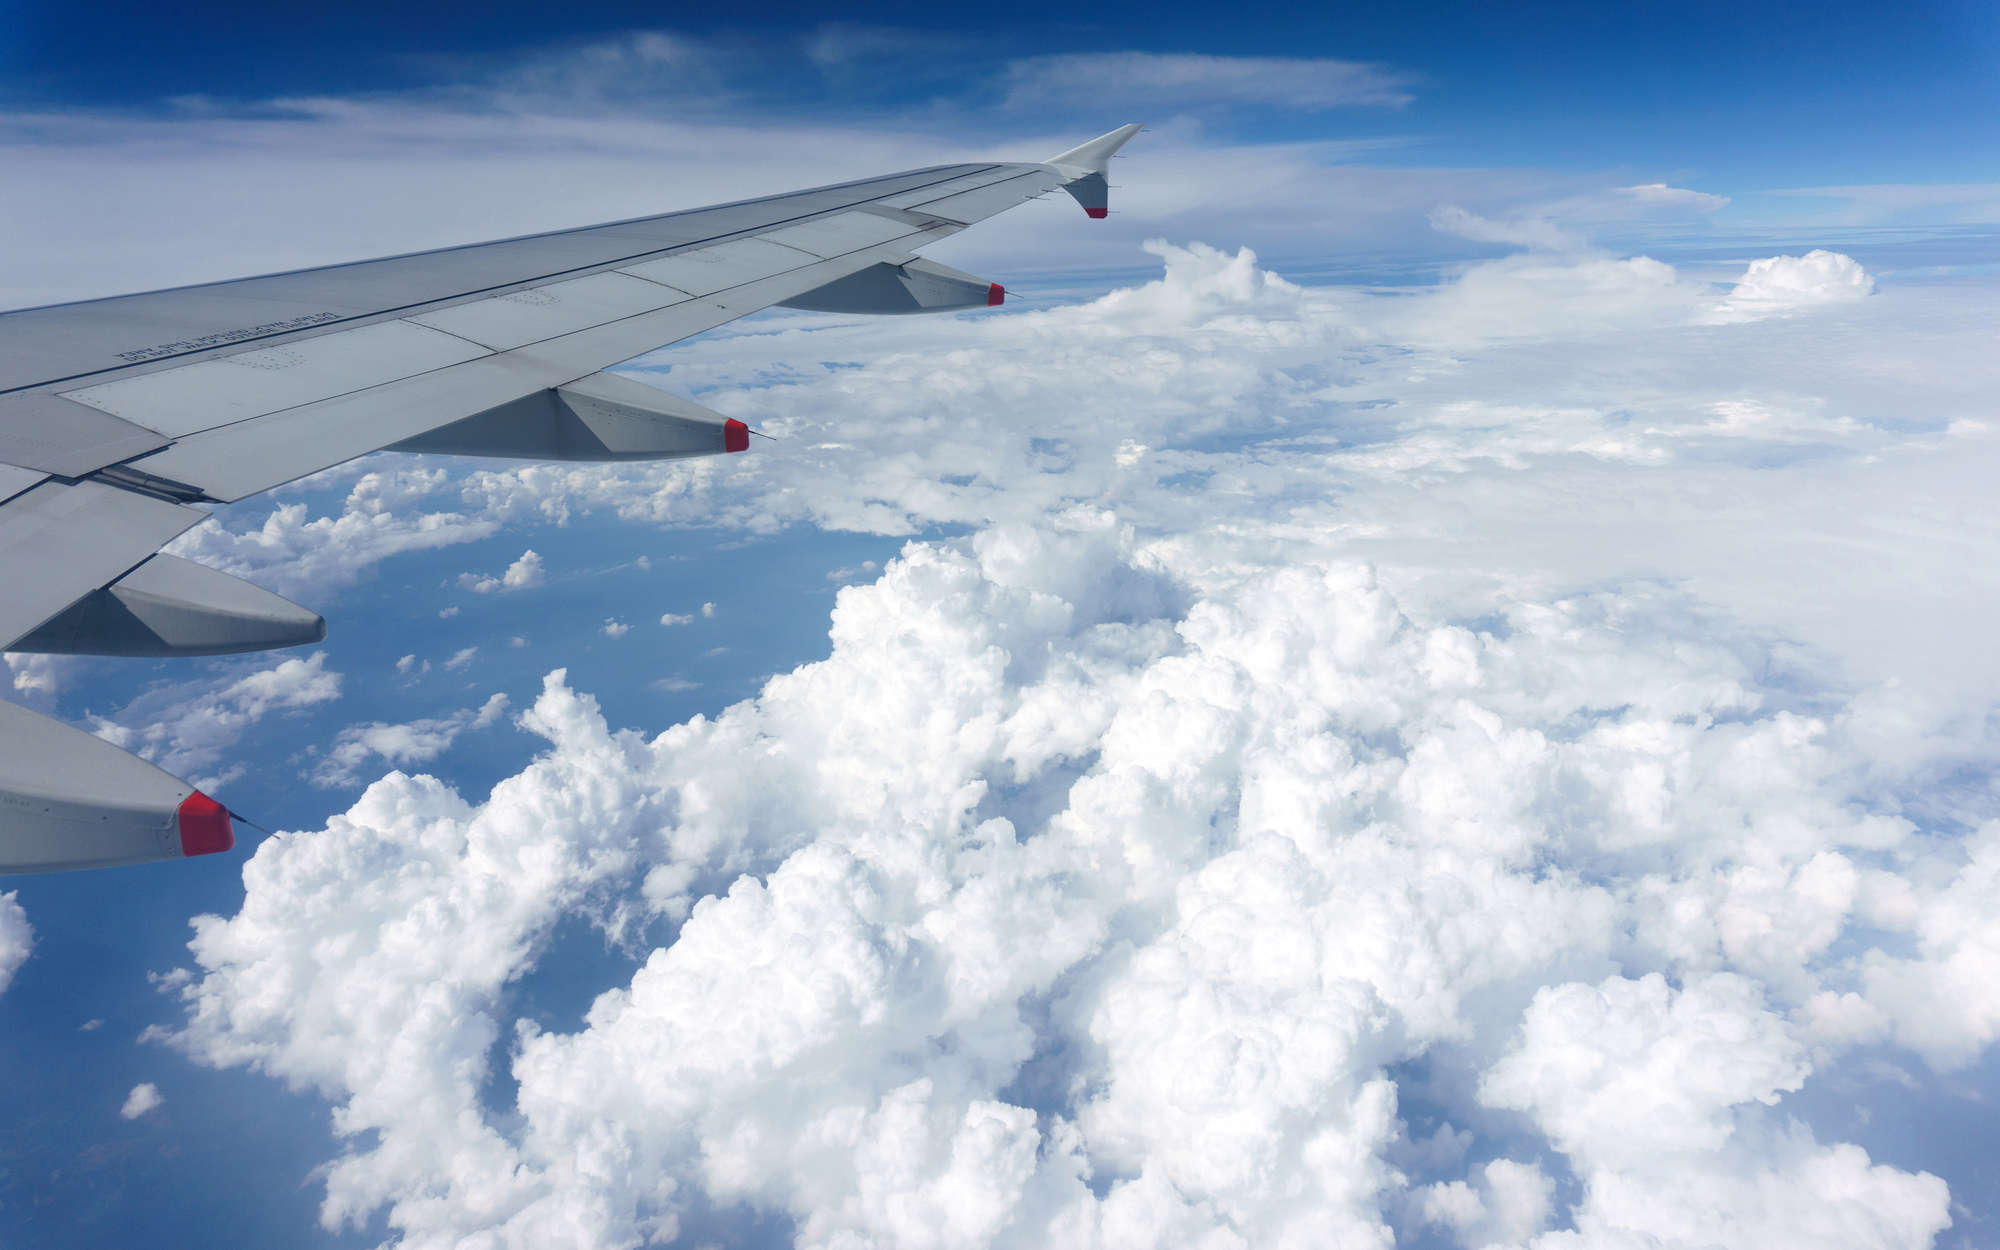             papiers peints à impression numérique avion au-dessus des nuages - nacré intissé lisse
        